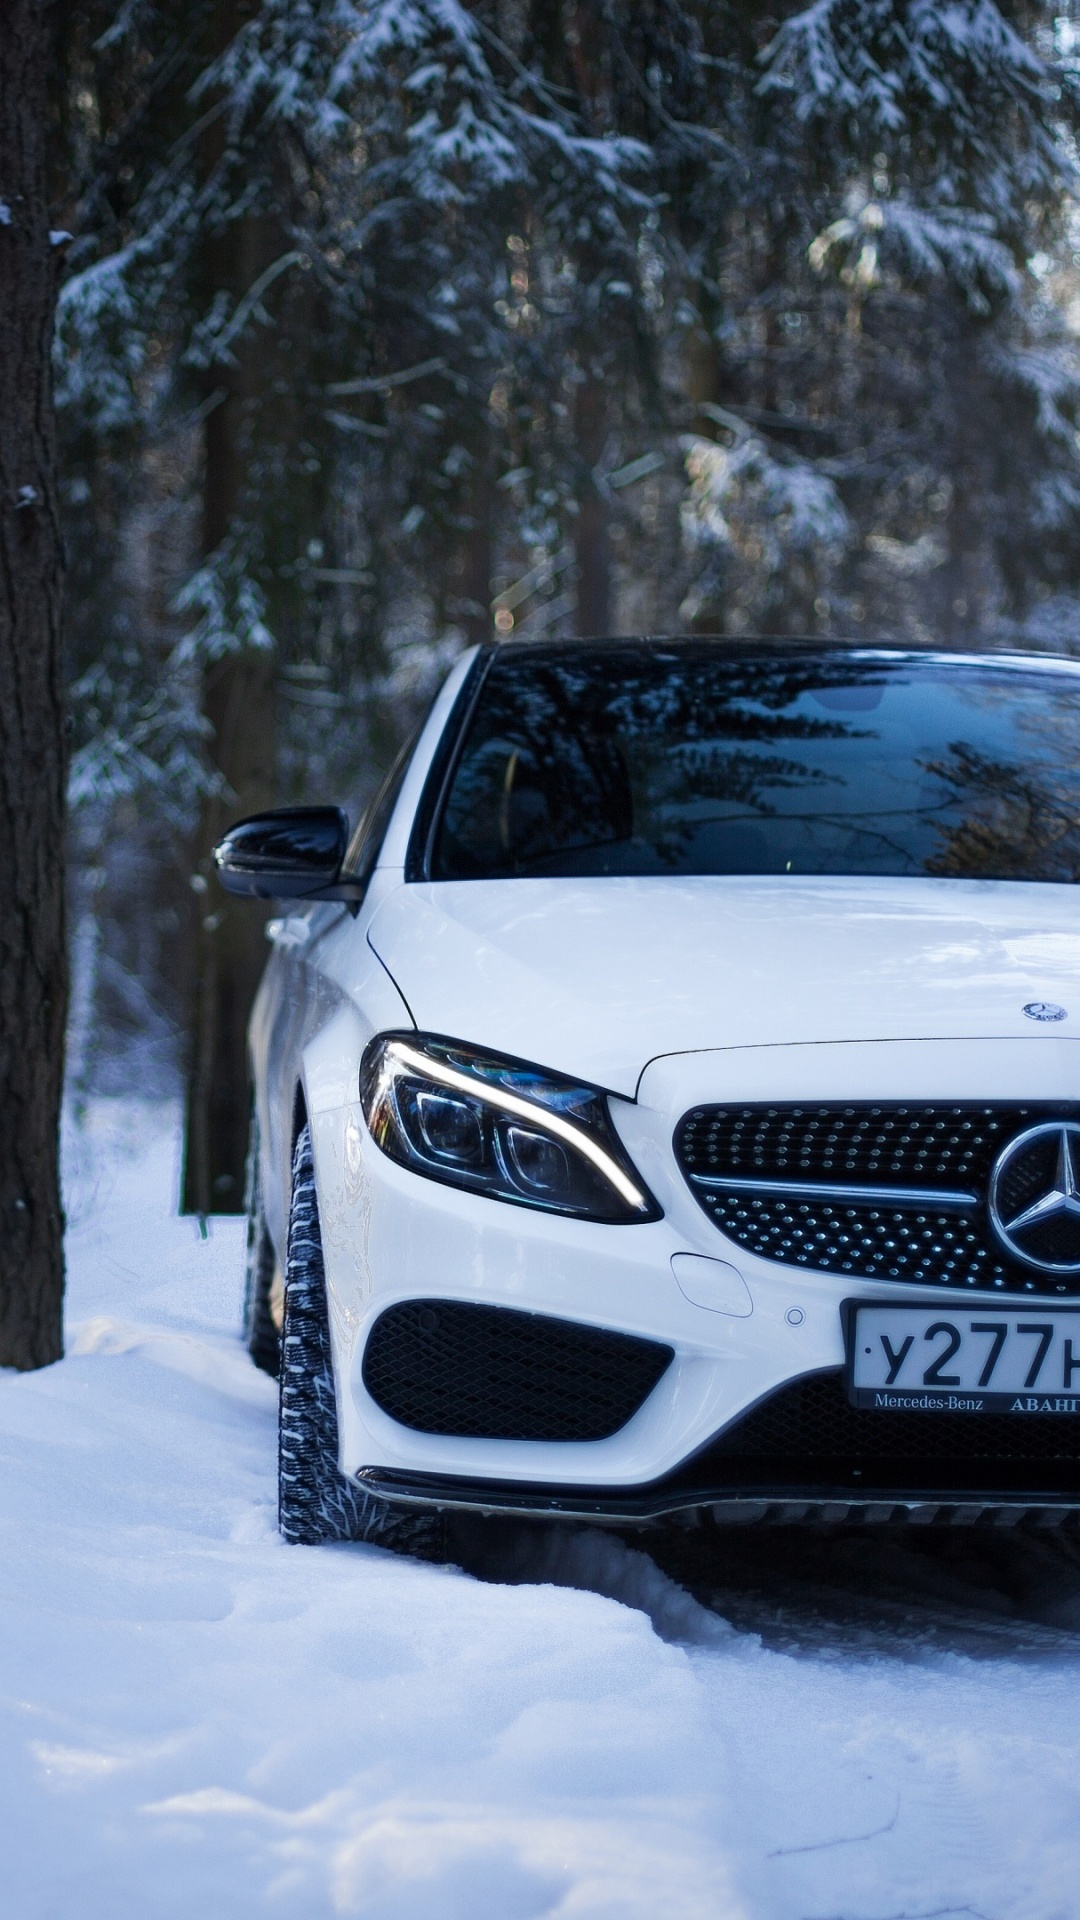 Weißes Mercedes Benz Auto Auf Verschneitem Boden. Wallpaper in 1080x1920 Resolution